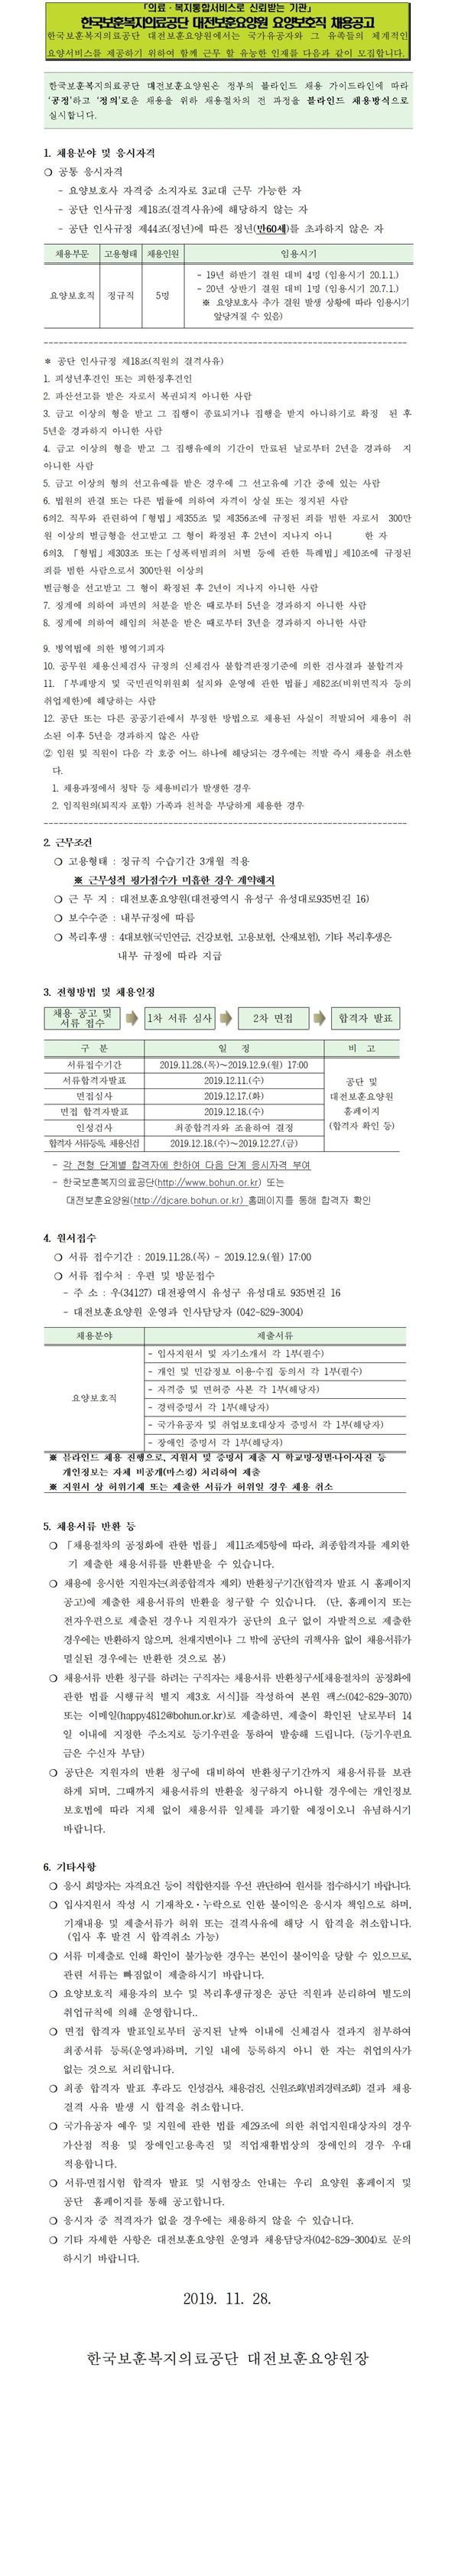 [채용][한국보훈복지의료공단] [대전보훈요양원] 2019년 요양보호사 공개채용 2차 공고